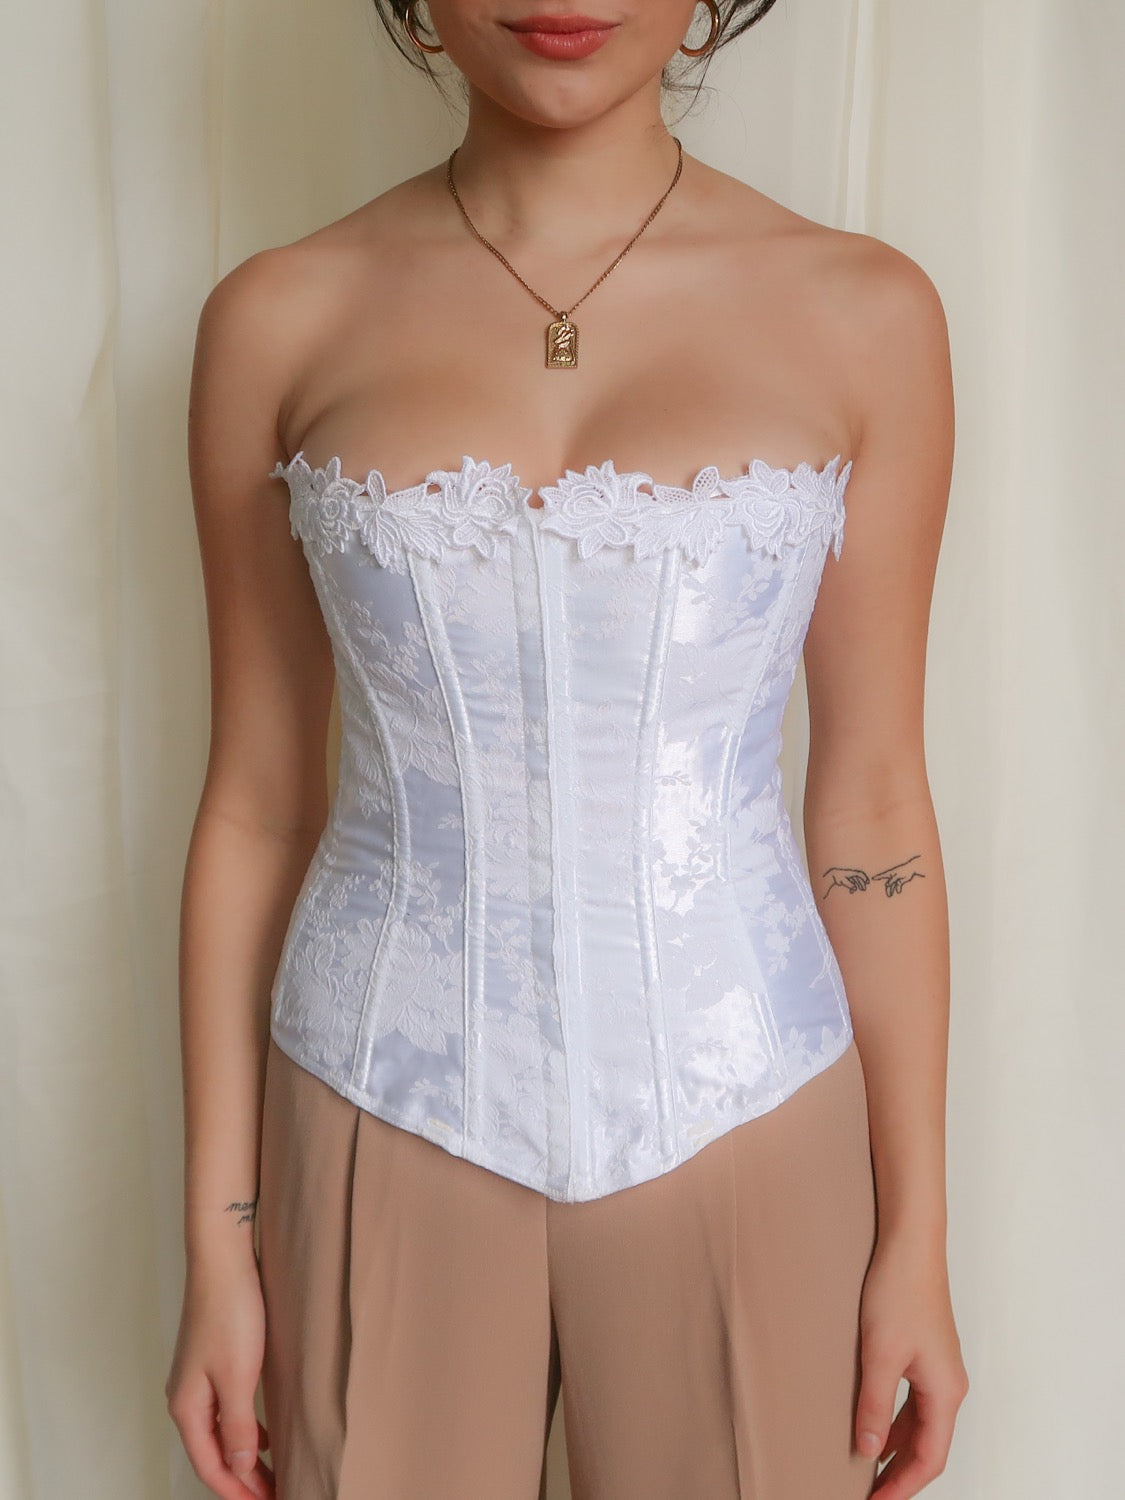 Vintage corset